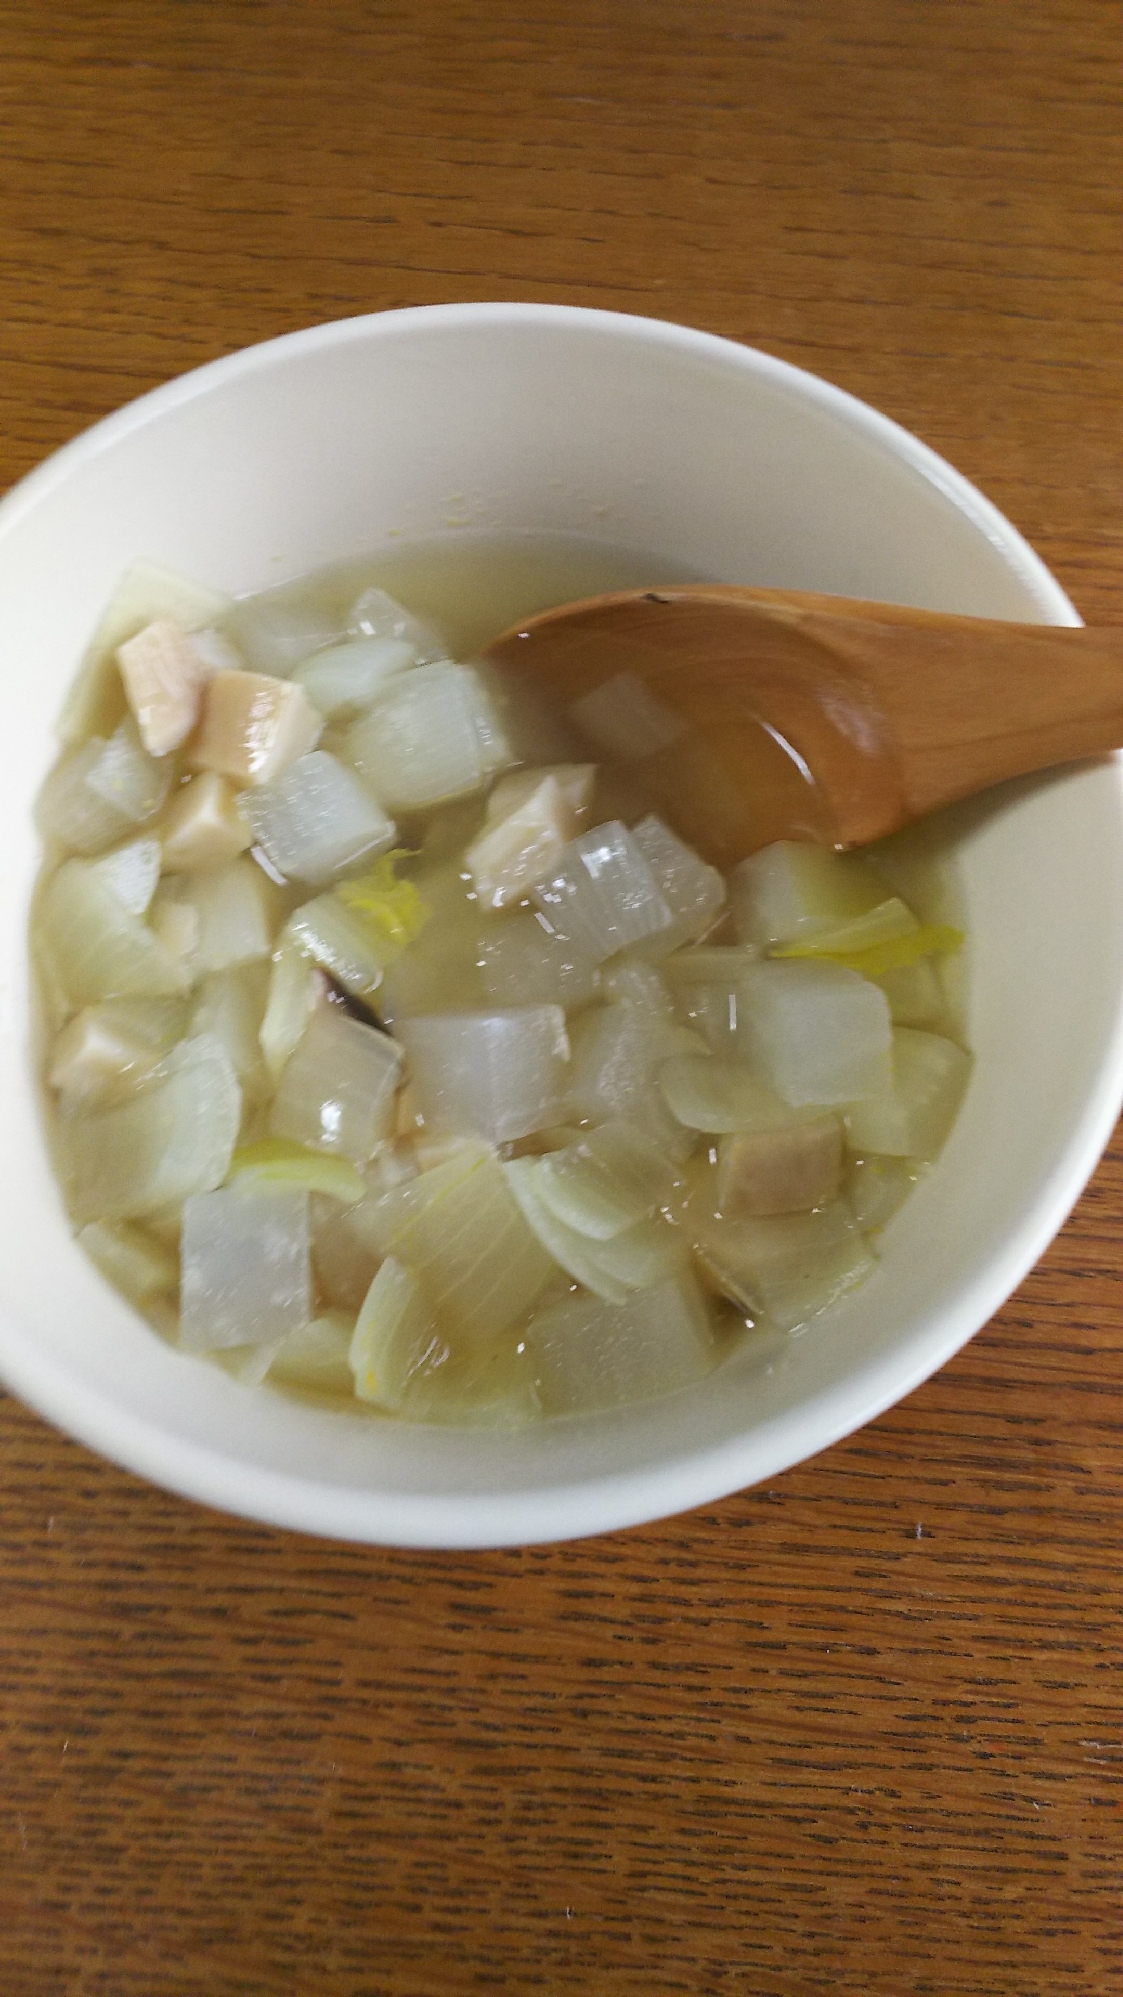 玉ねぎ&大根&白菜&エリンギのスープ